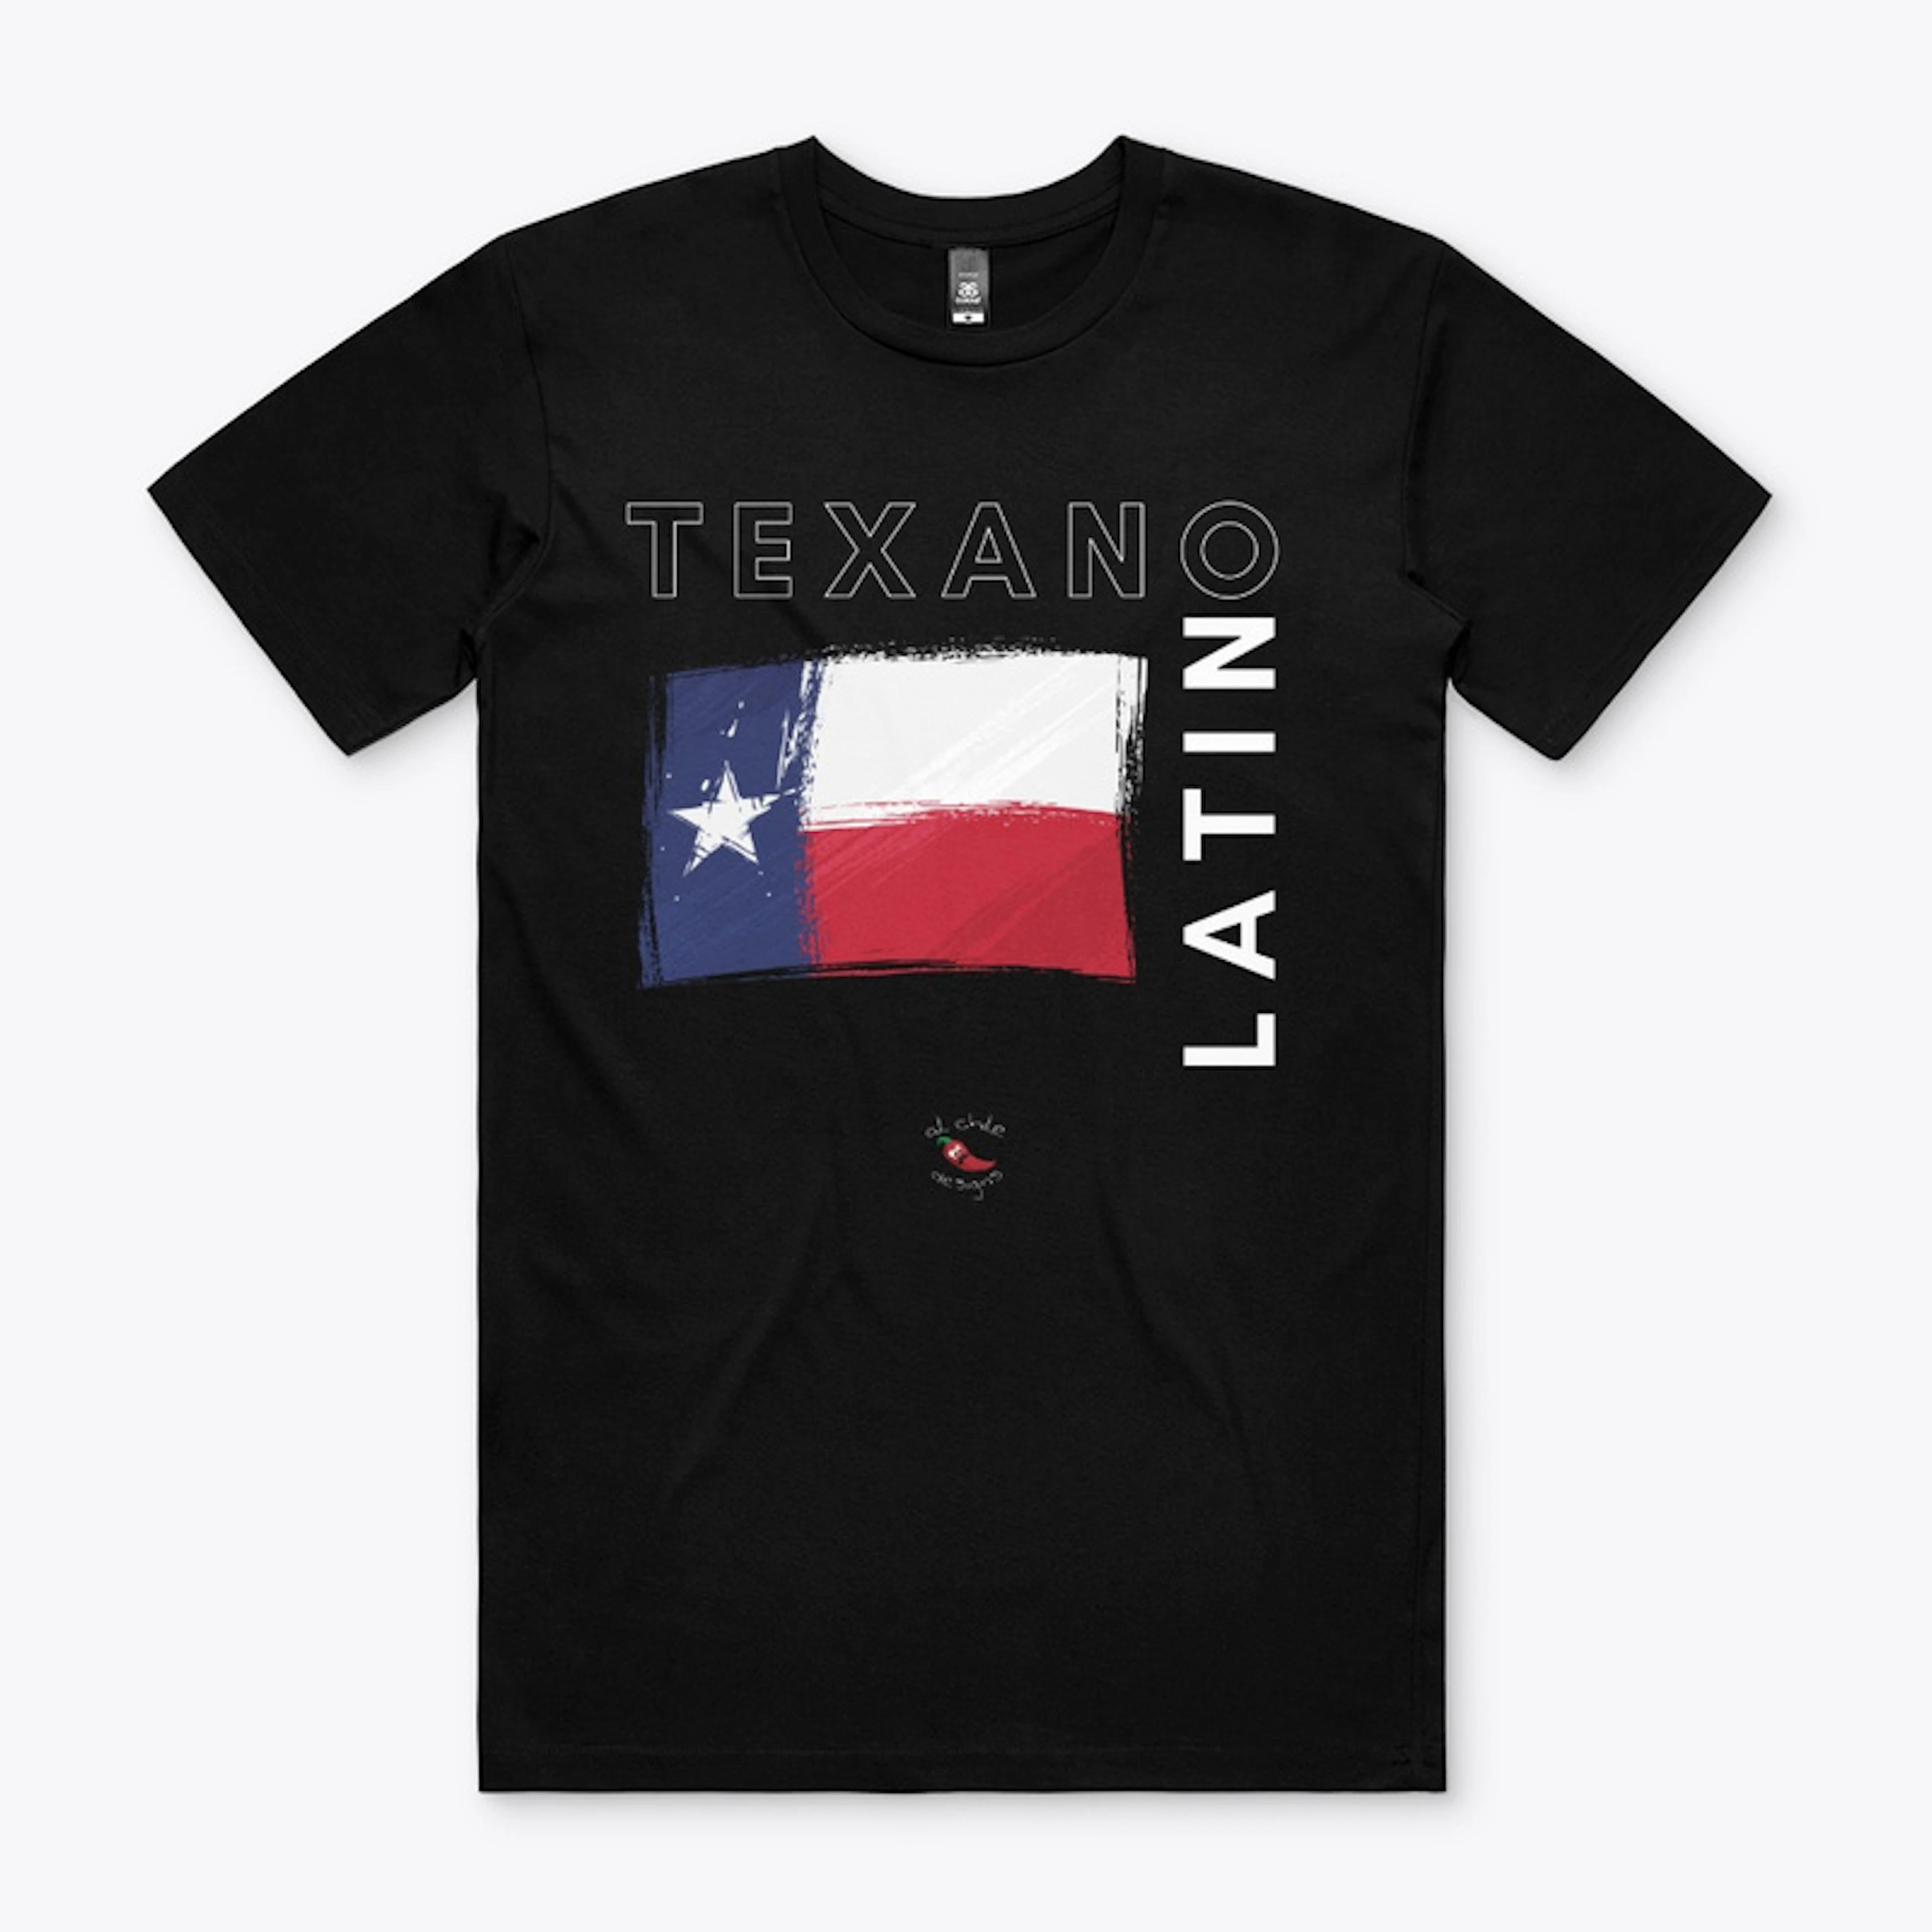 Texano Latino